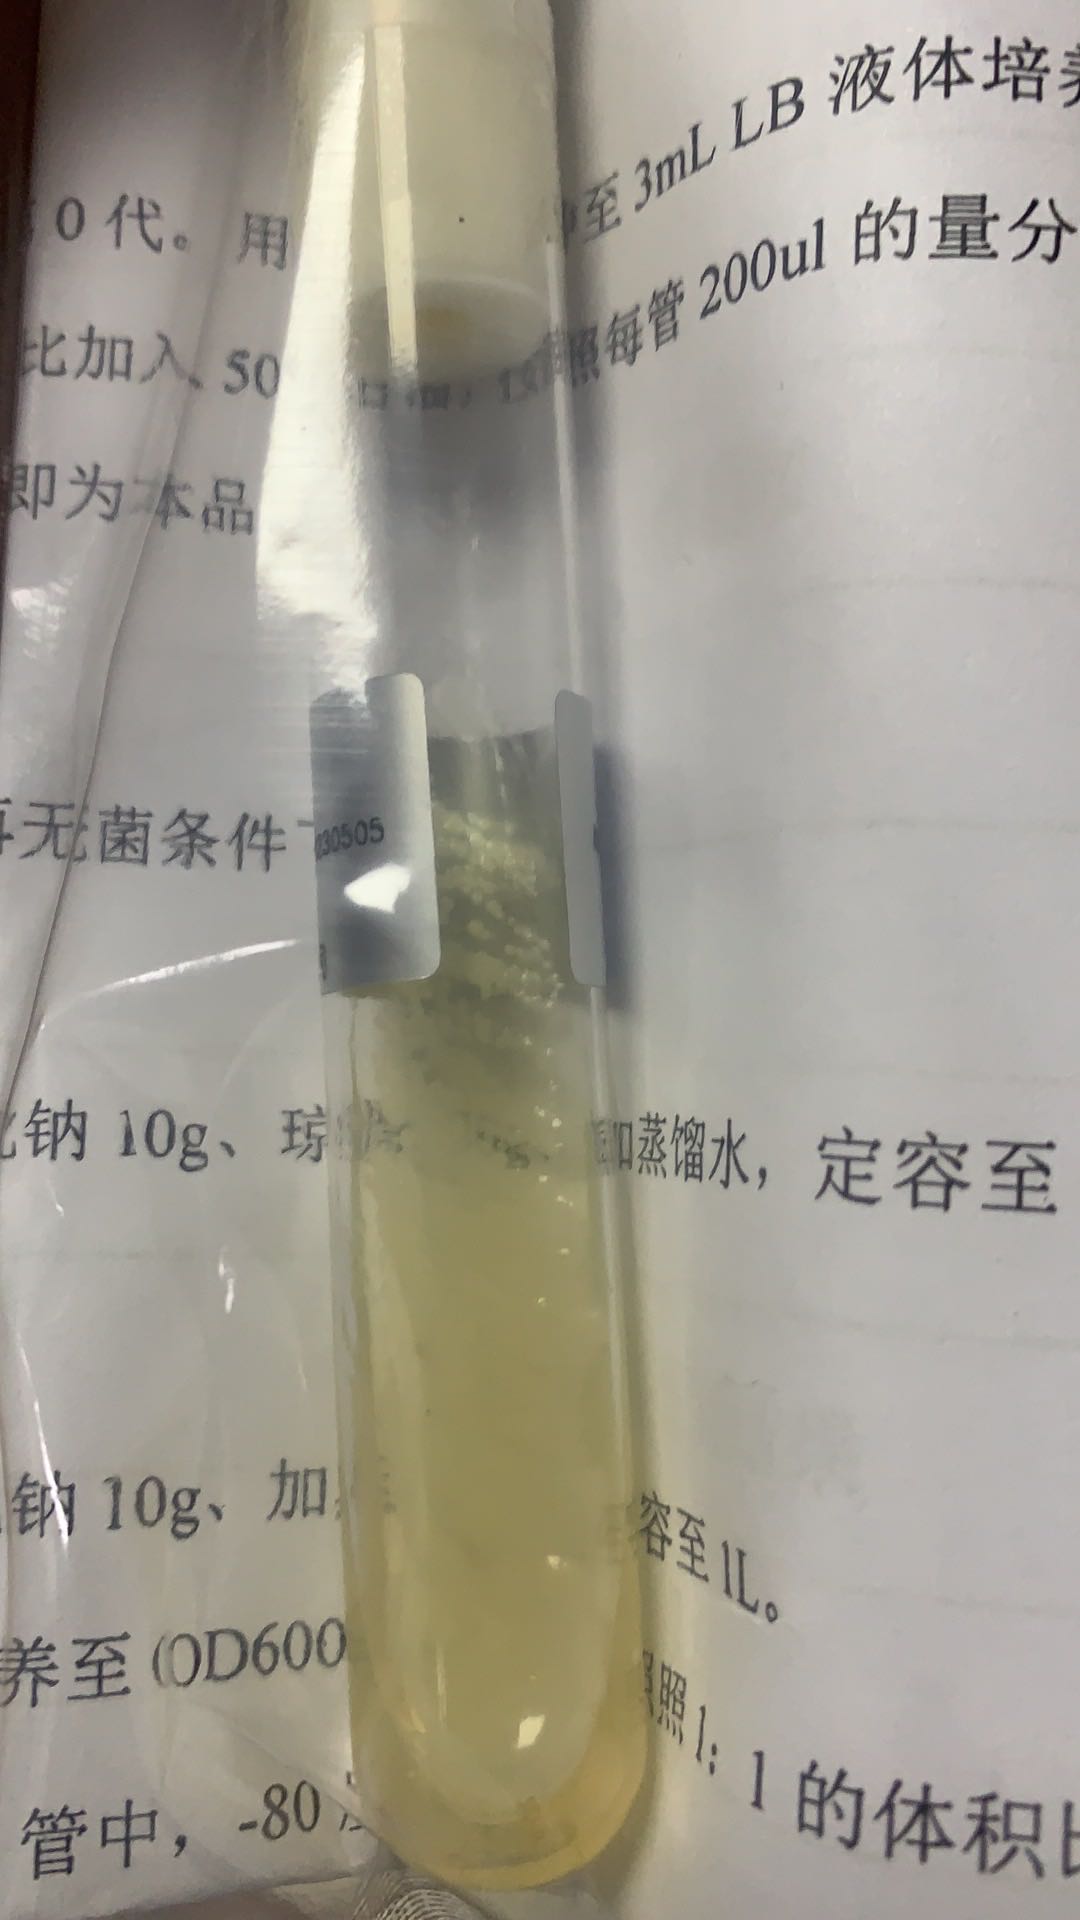 提供金黄色葡萄球菌菌种_冻干粉金黄色葡萄球菌保藏中心_上海晅科生物科技有限公司